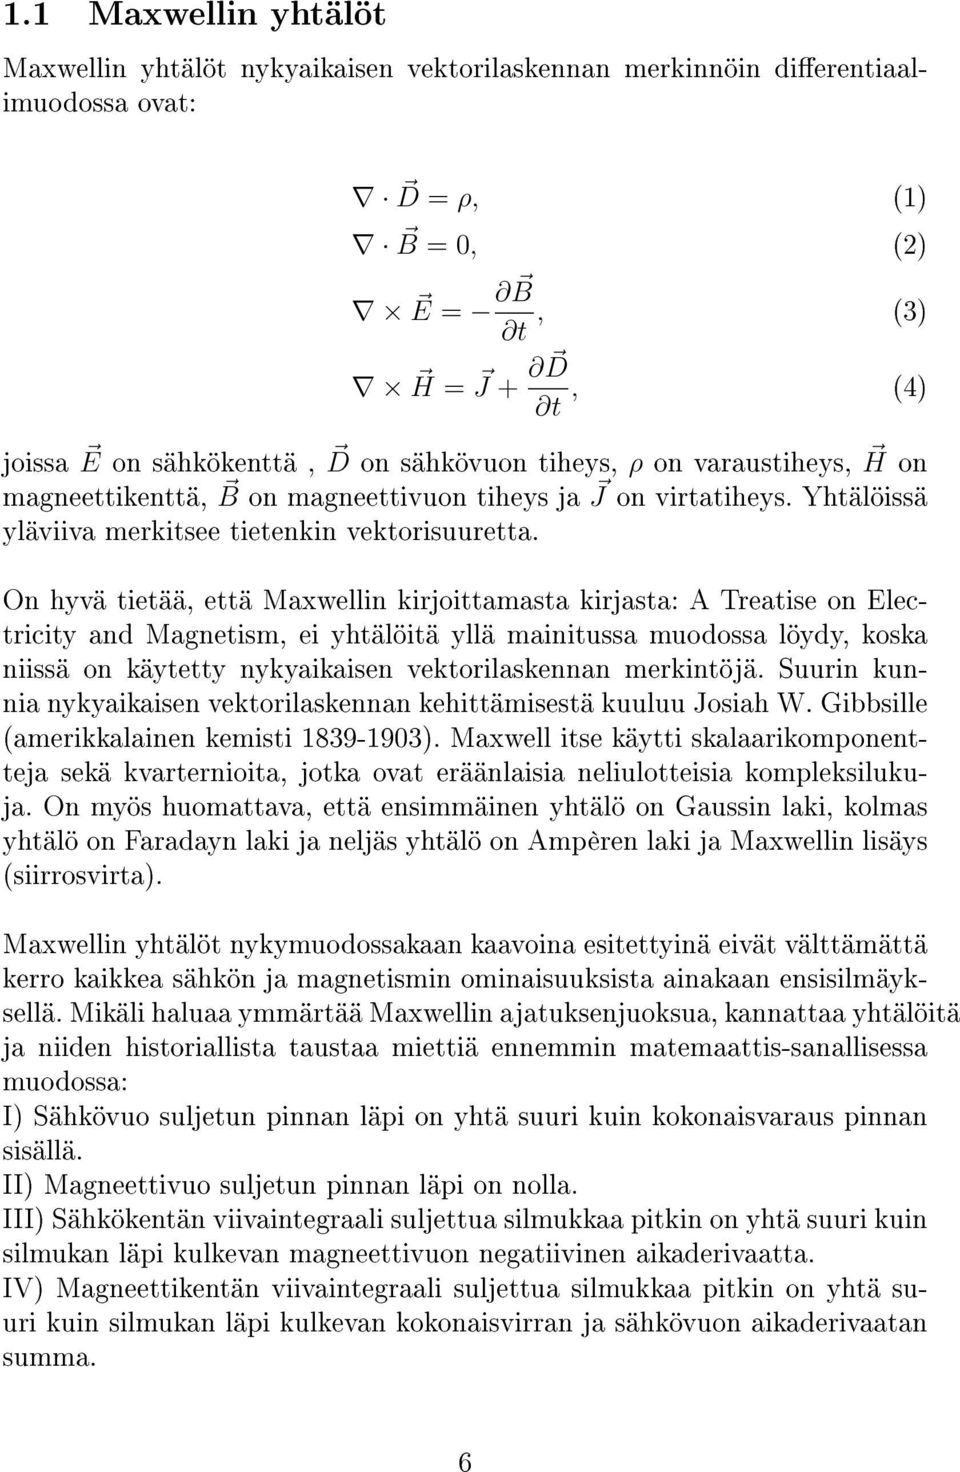 On hyvä tietää, että Maxwellin kirjoittamasta kirjasta: A Treatise on Electricity and Magnetism, ei yhtälöitä yllä mainitussa muodossa löydy, koska niissä on käytetty nykyaikaisen vektorilaskennan